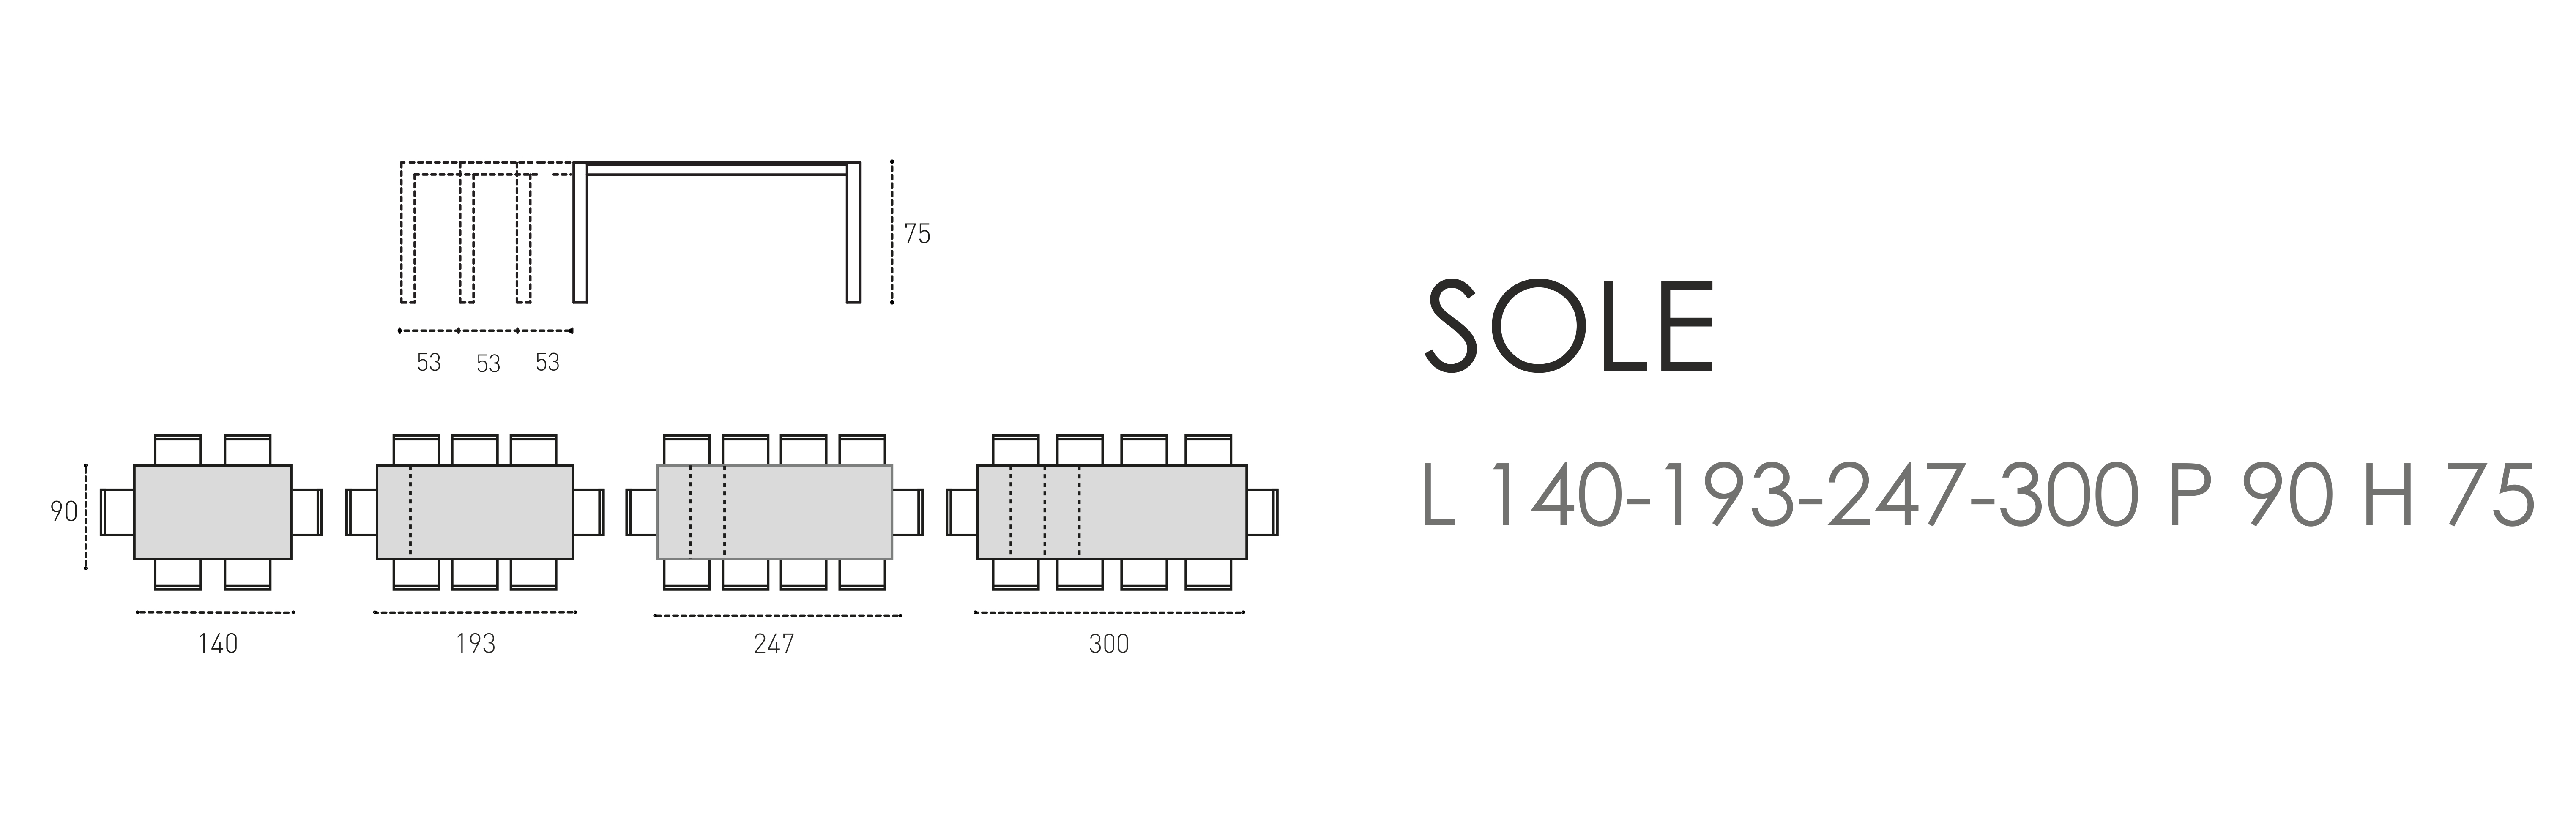 Sole L 140-193-247-300 P 90 H 75